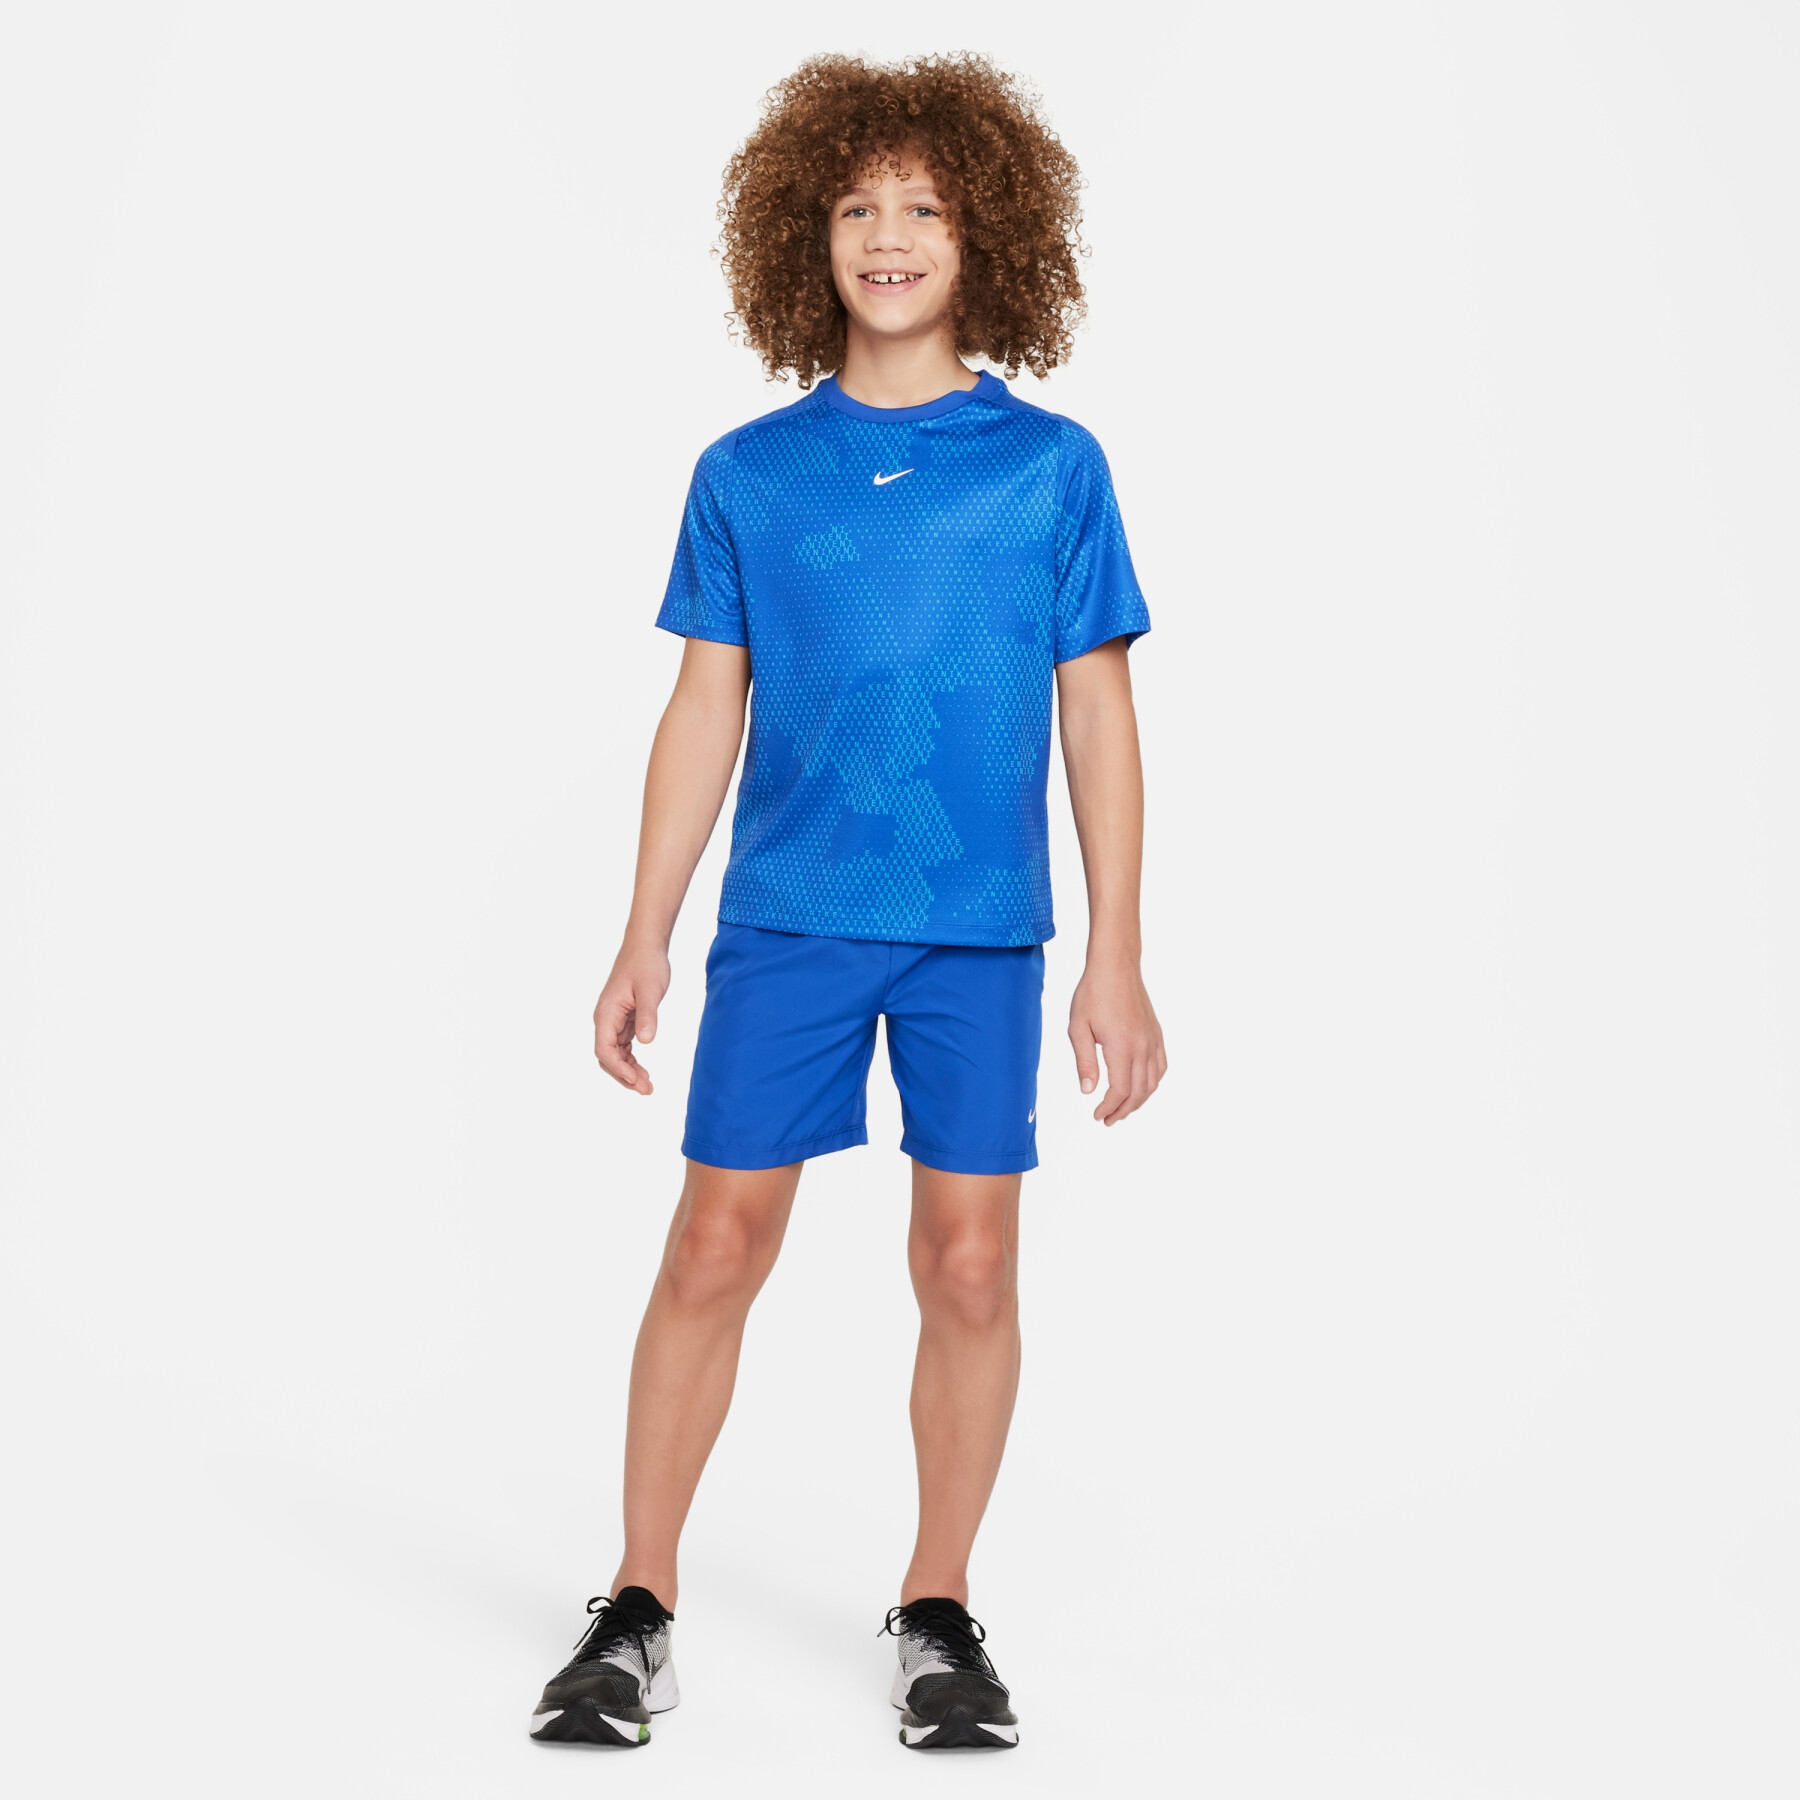 Camisola para crianças Nike Multi